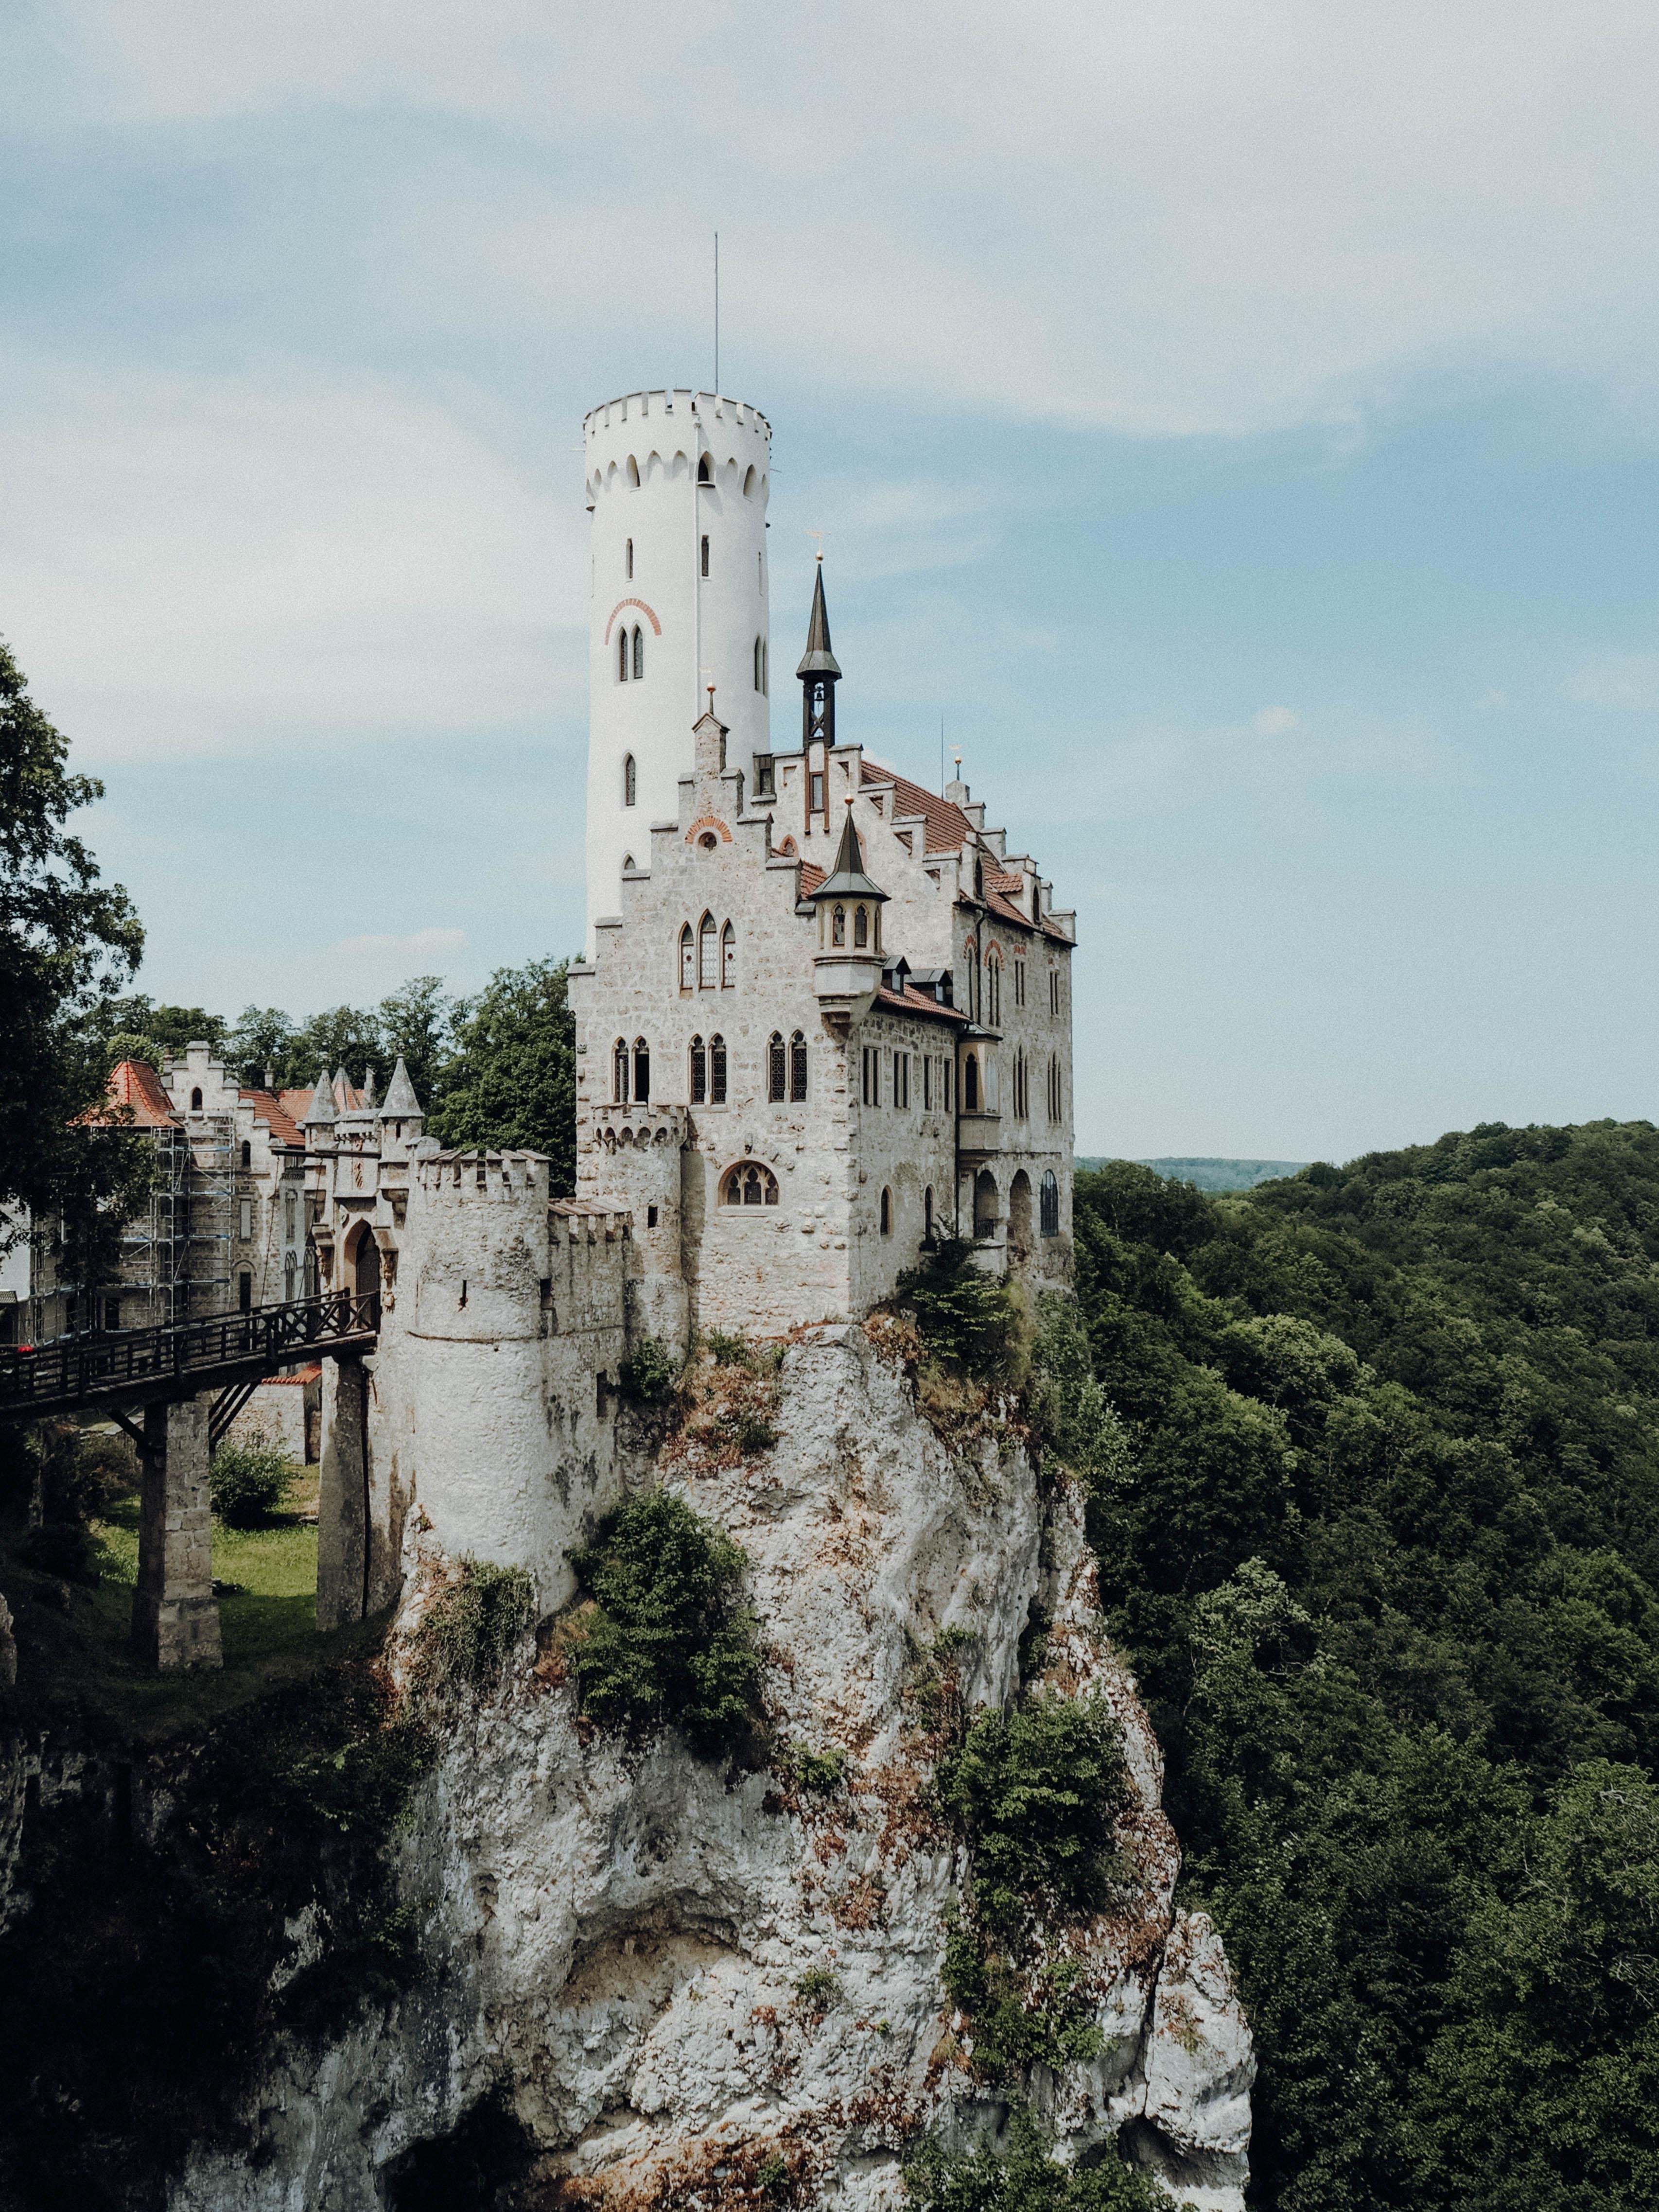 Und wenn ihr mal in meiner schwäbischen Heimat seid, dann dürft ihr das #SchlossLichtenstein nicht verpassen! #urlaub